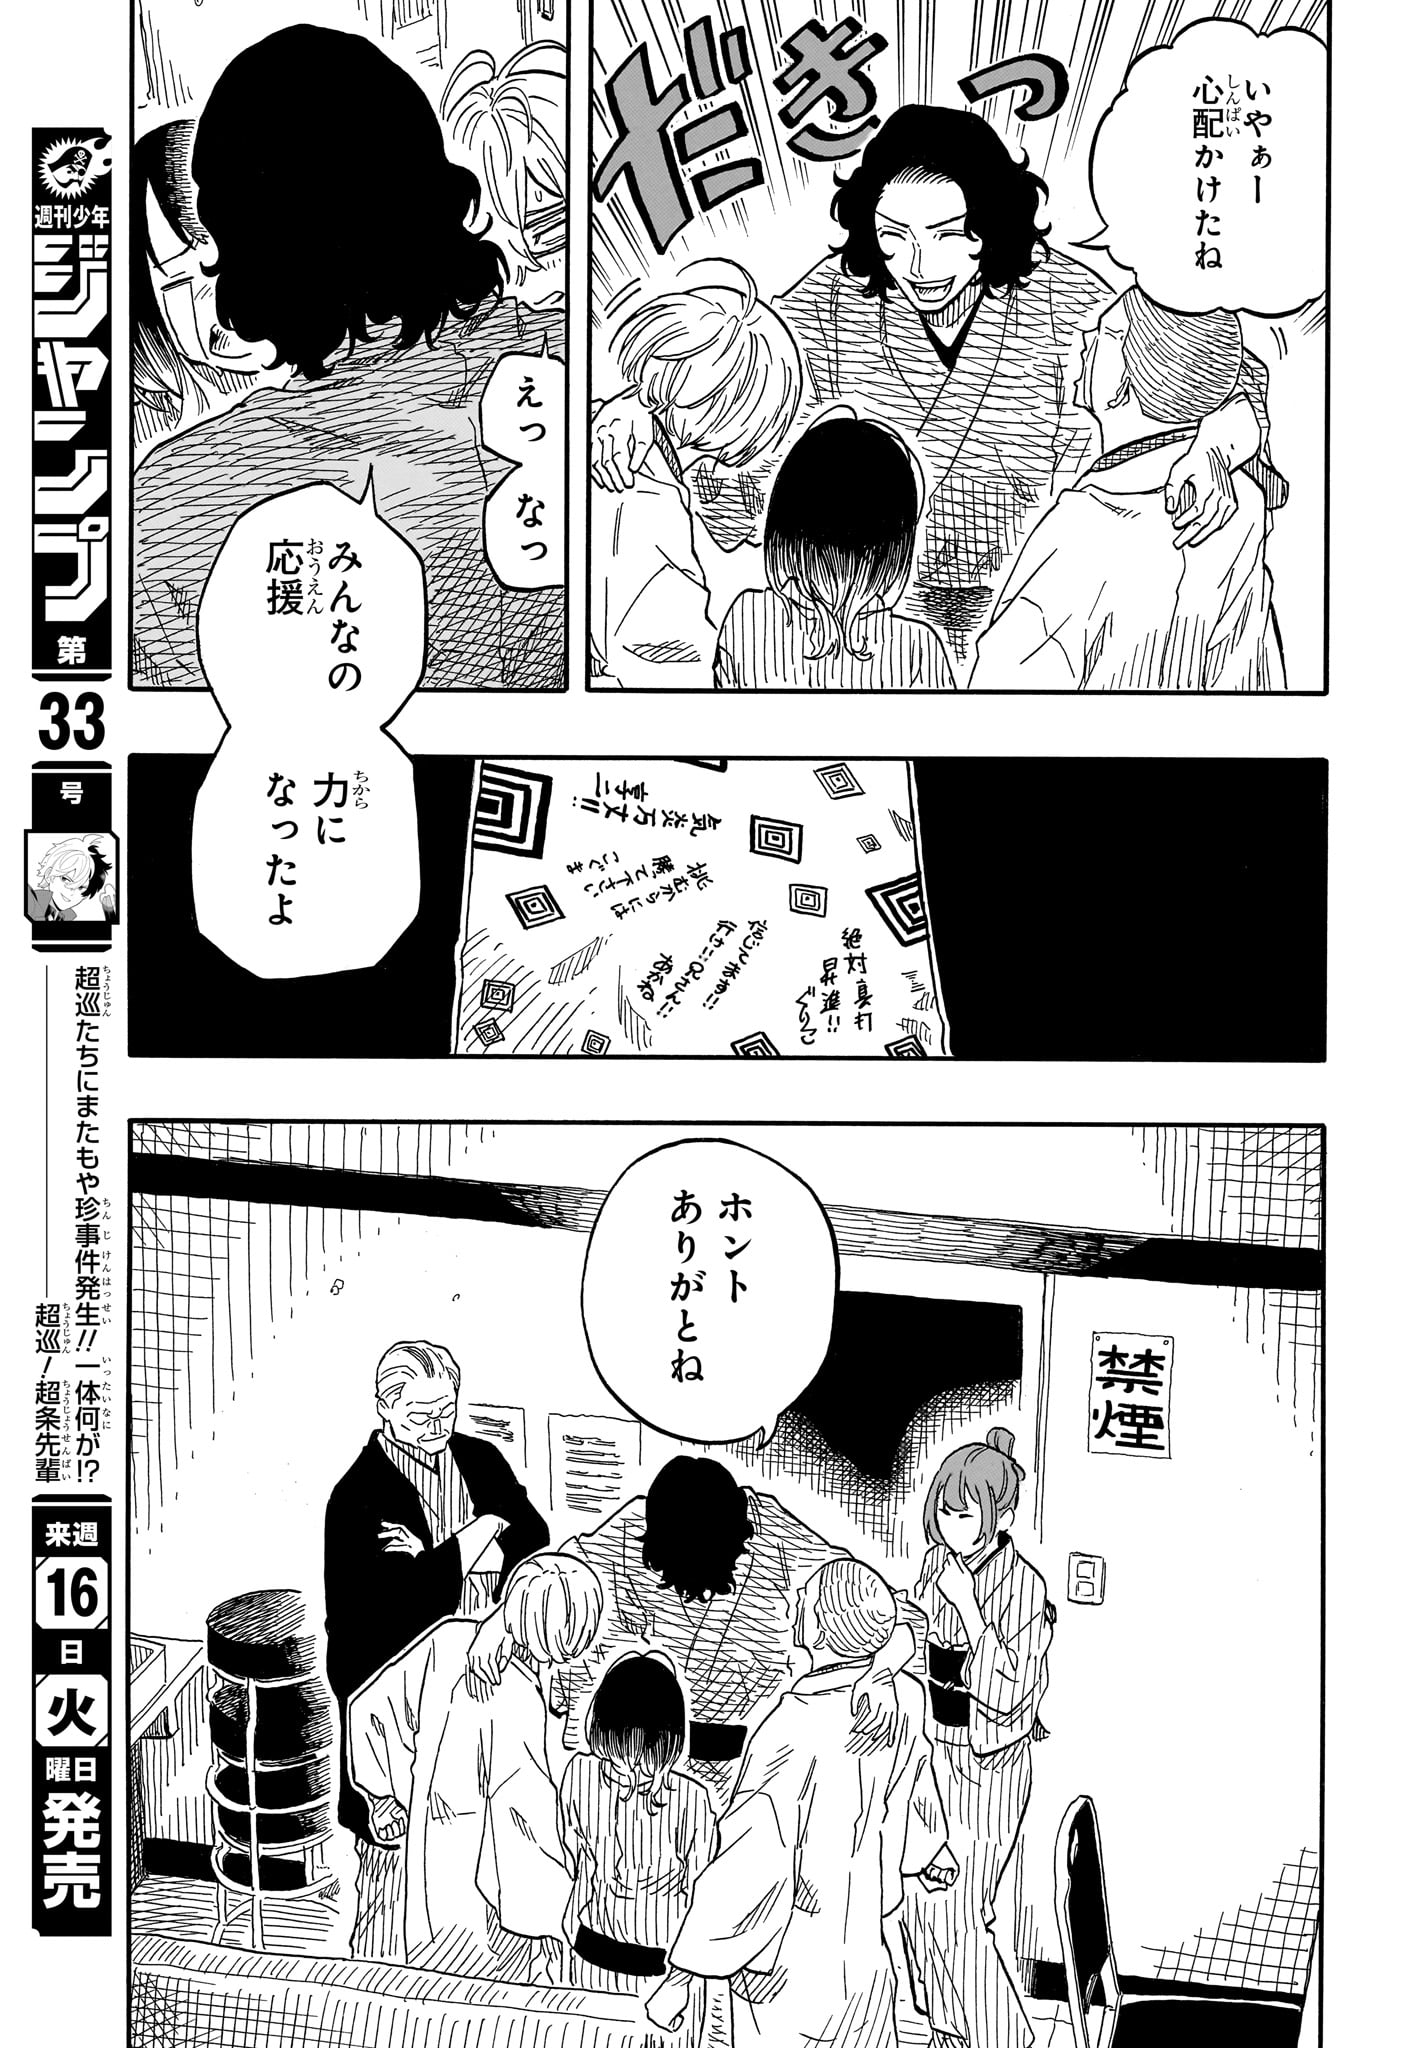 Akane-Banashi - Chapter 117 - Page 7